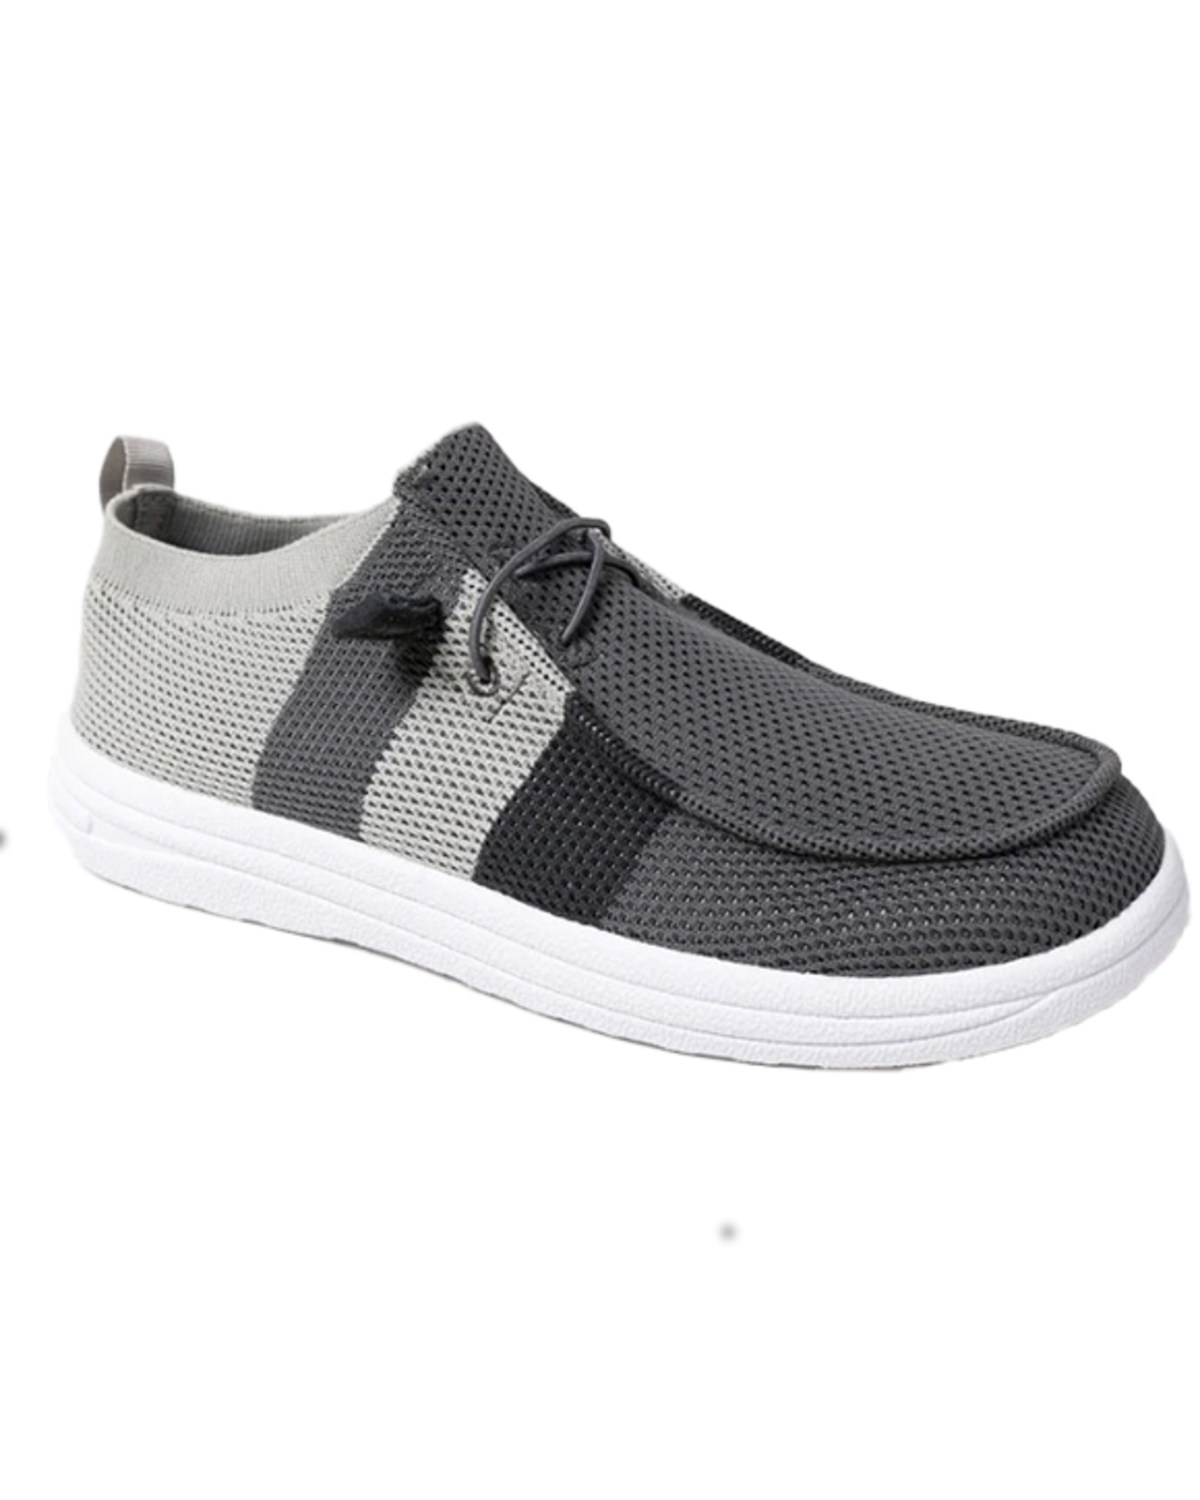 Lamo Footwear Men's Michael Casual Shoes - Moc Toe